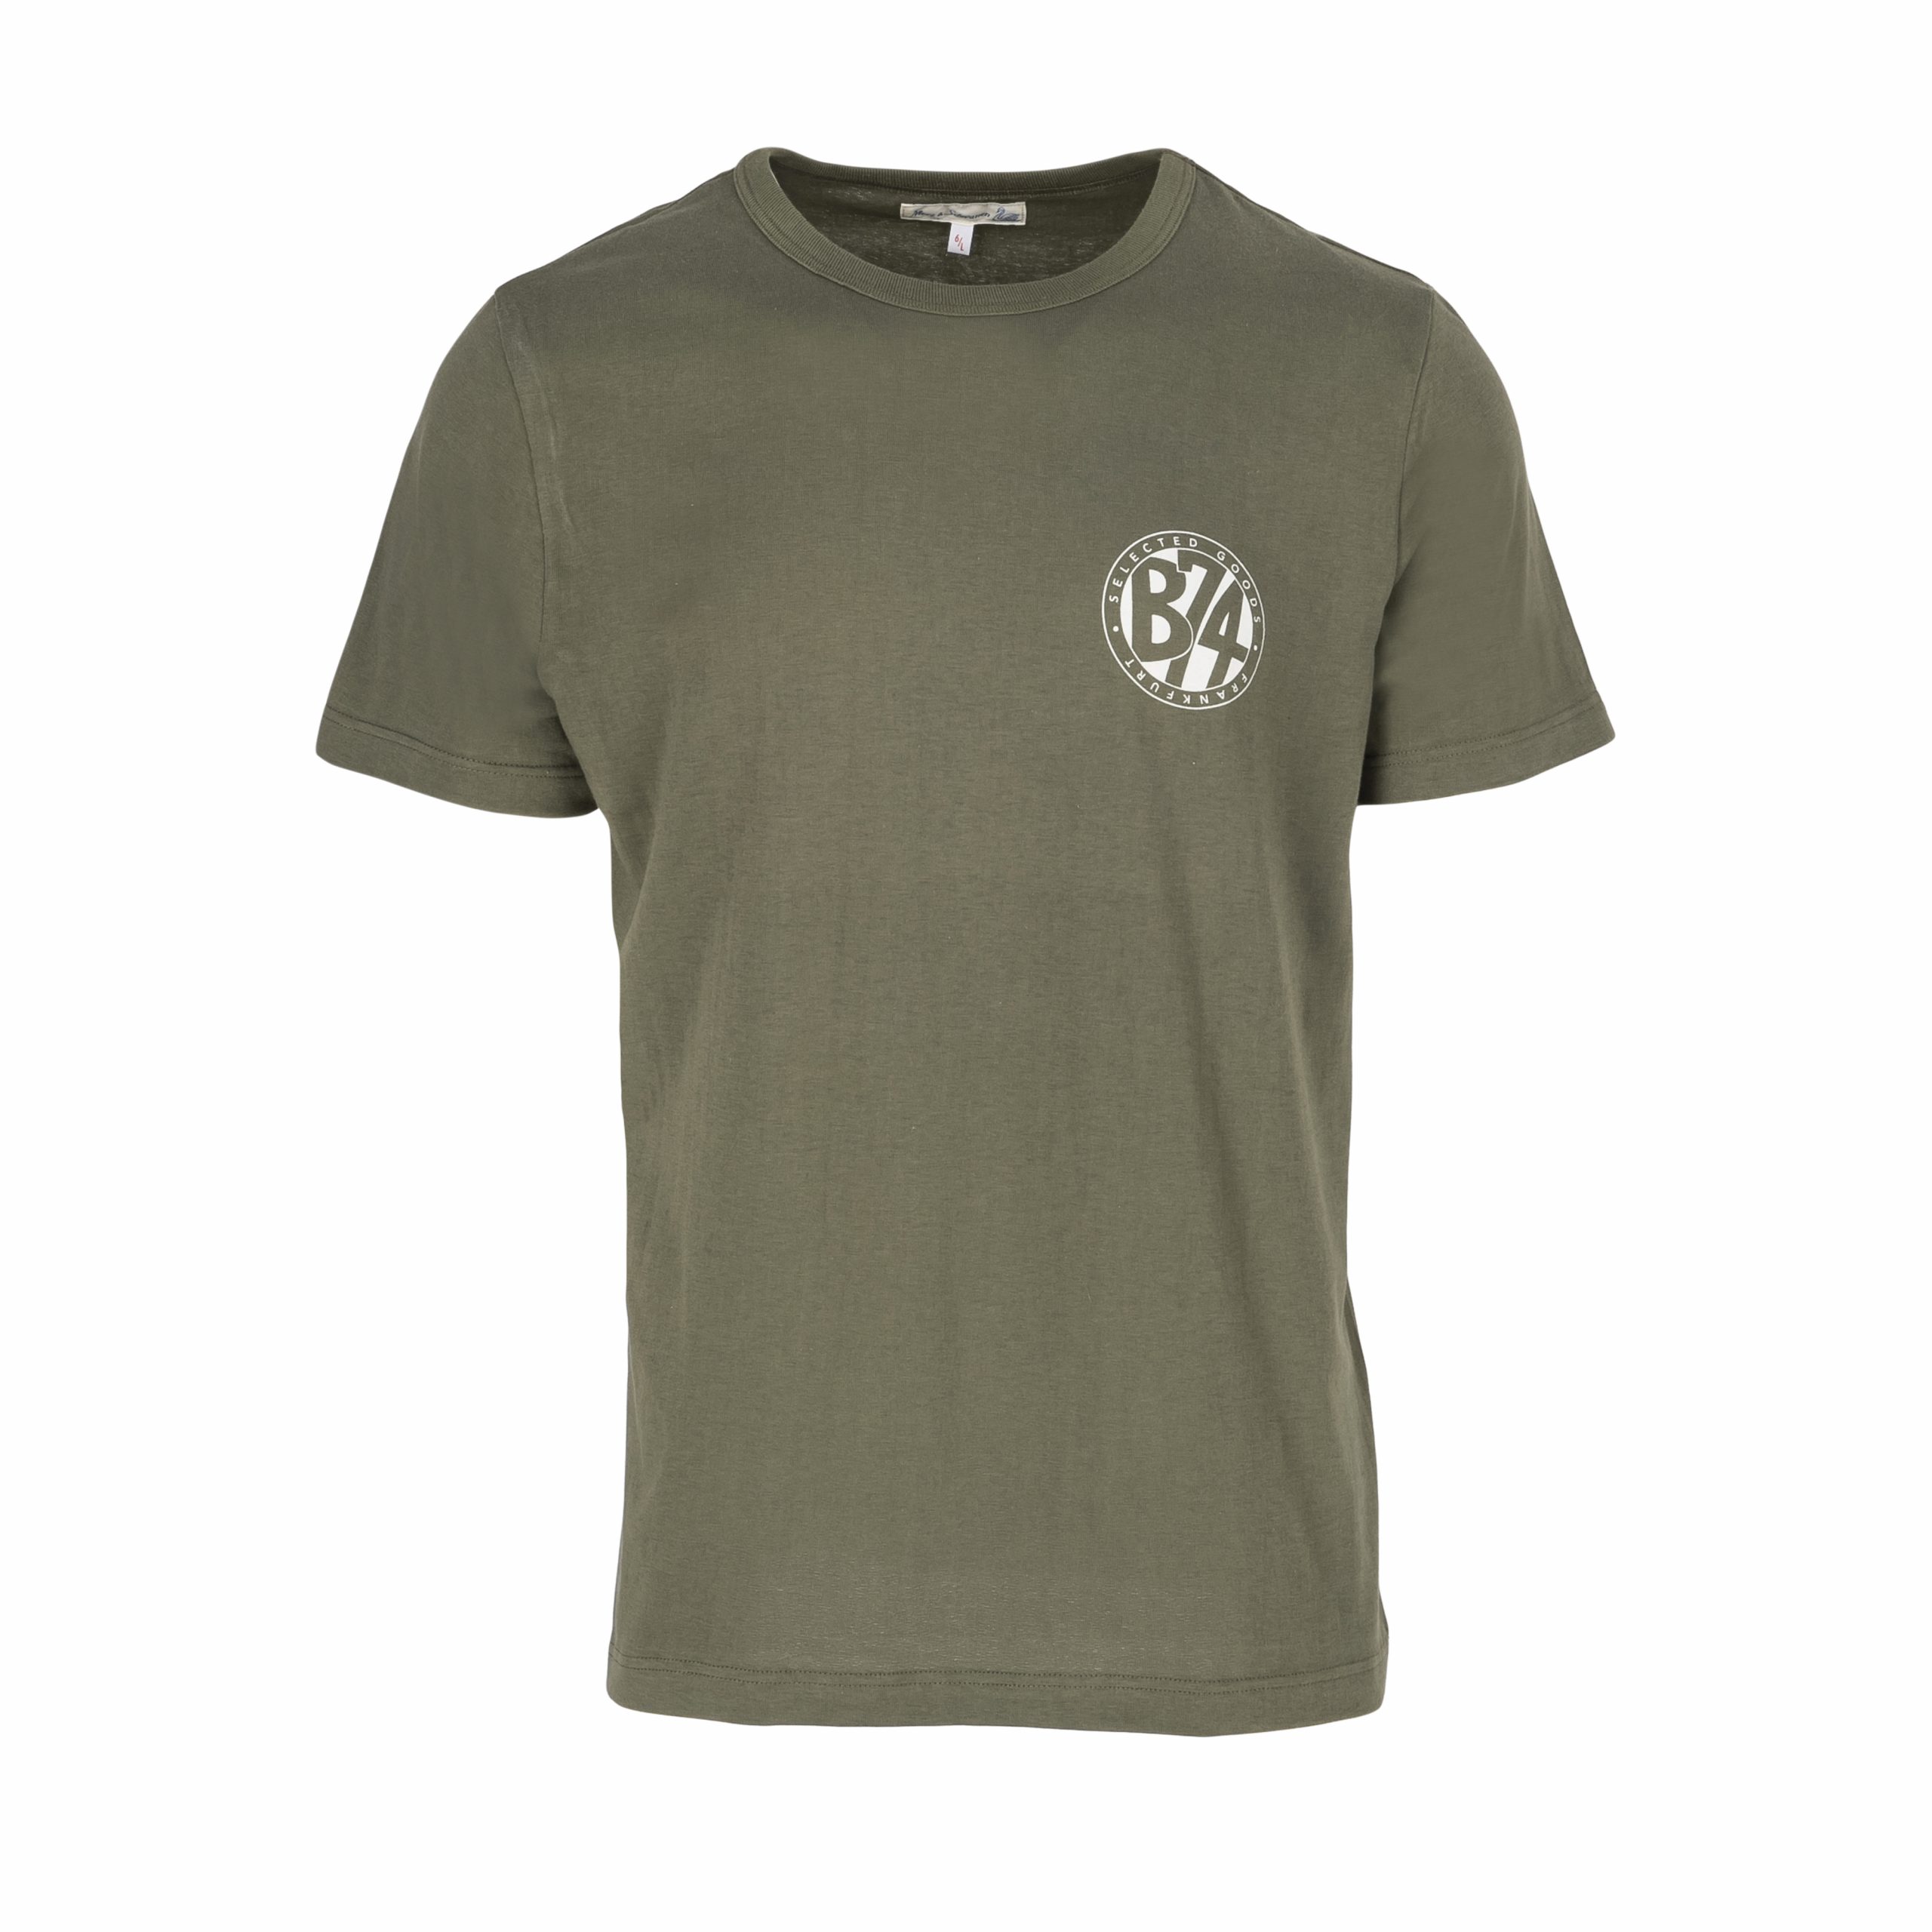 B74 x Merz b. Schwanen 1950’s Crew Neck Army T-Shirt – B74